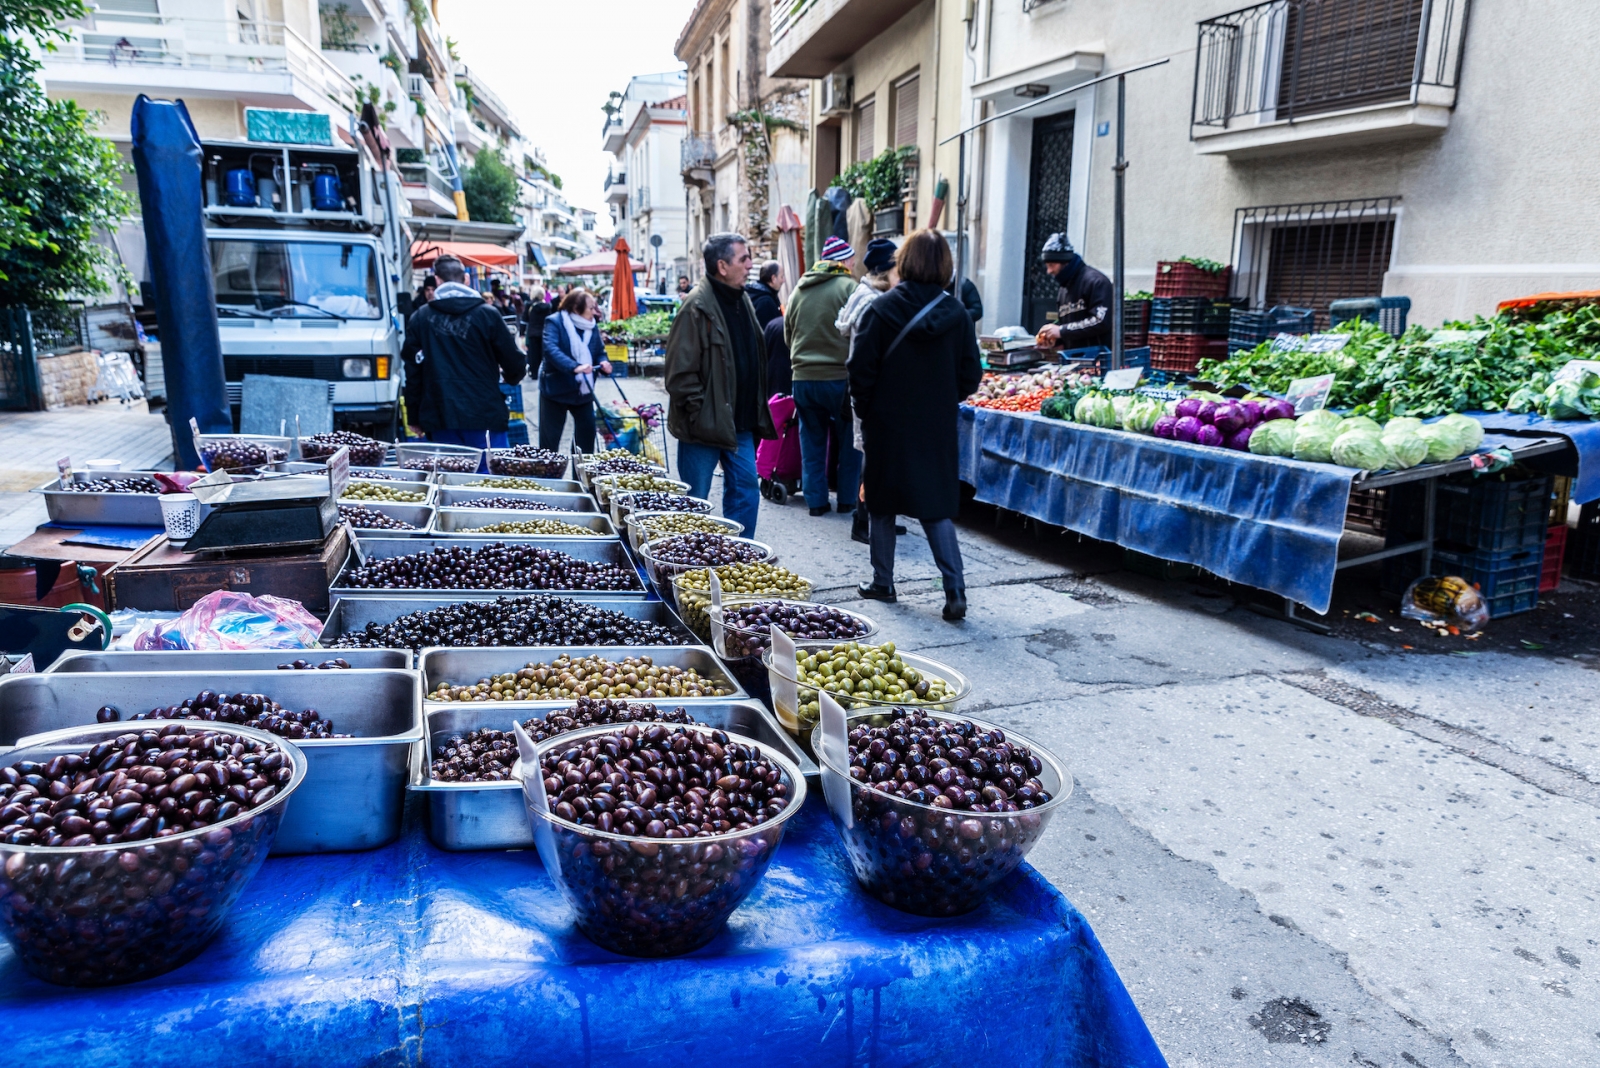 Mercado de agricultores en una calle de Atenas, Grecia